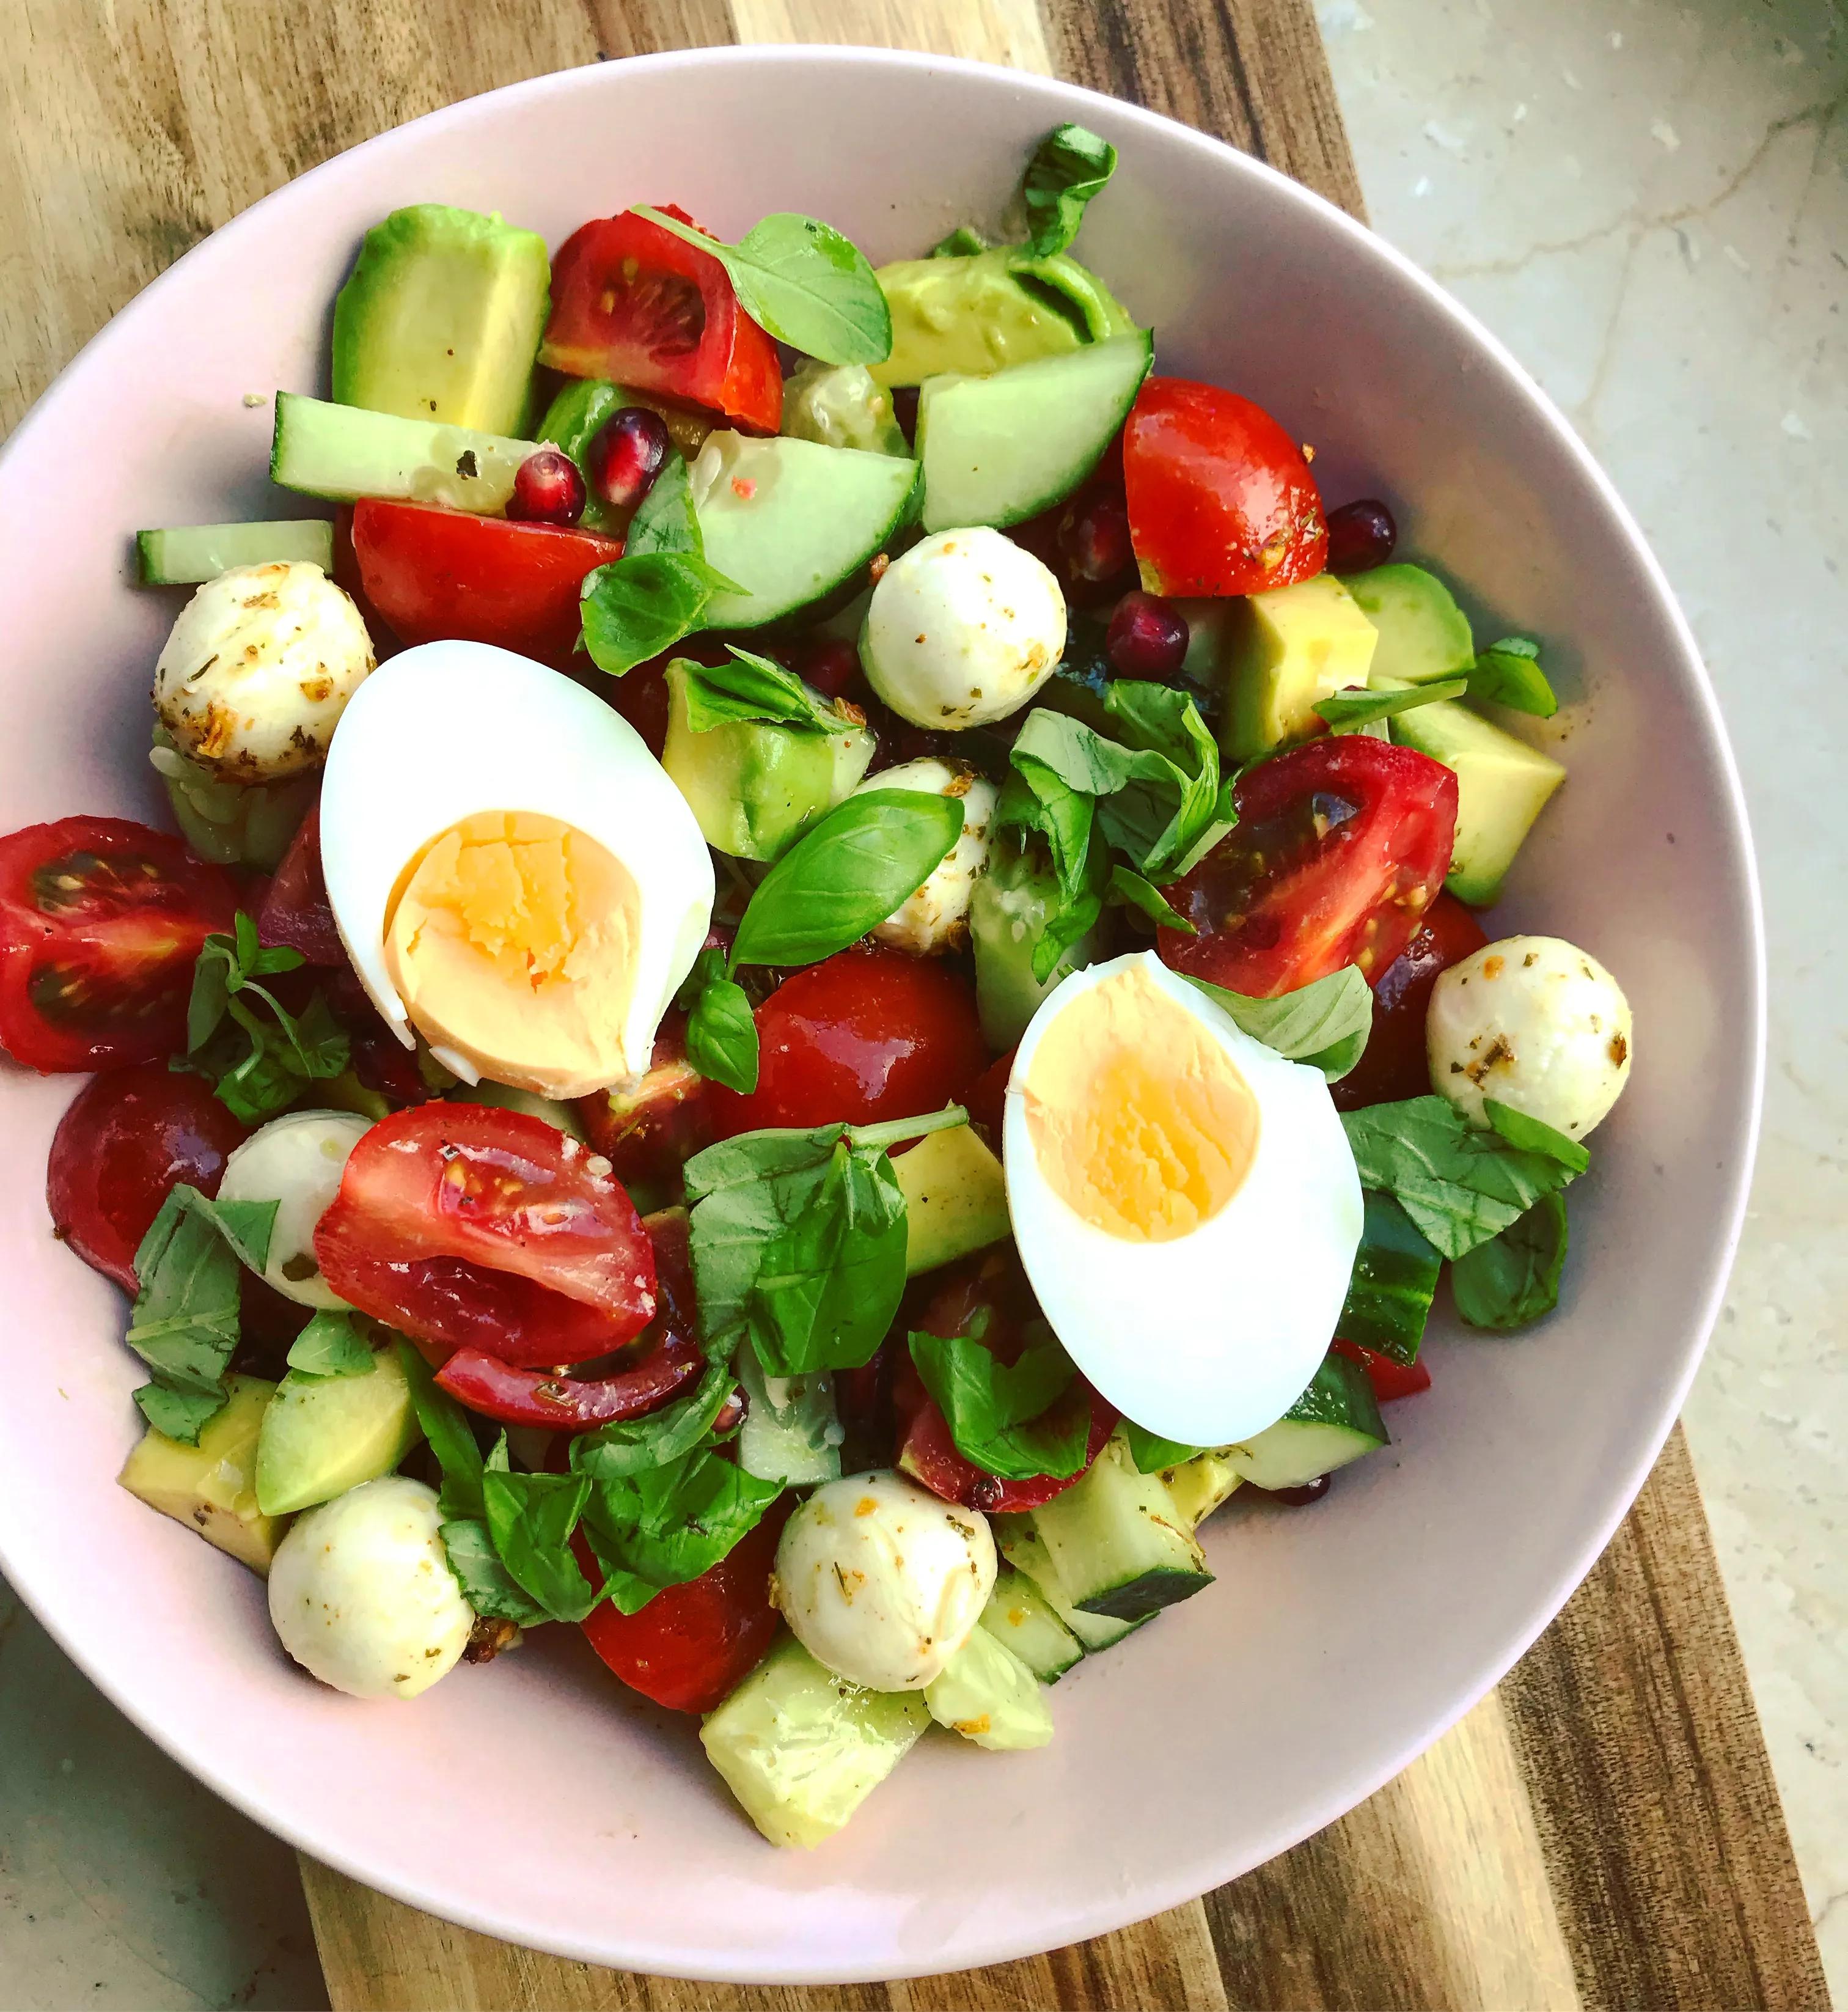 Würfel Salat — Rezepte Suchen